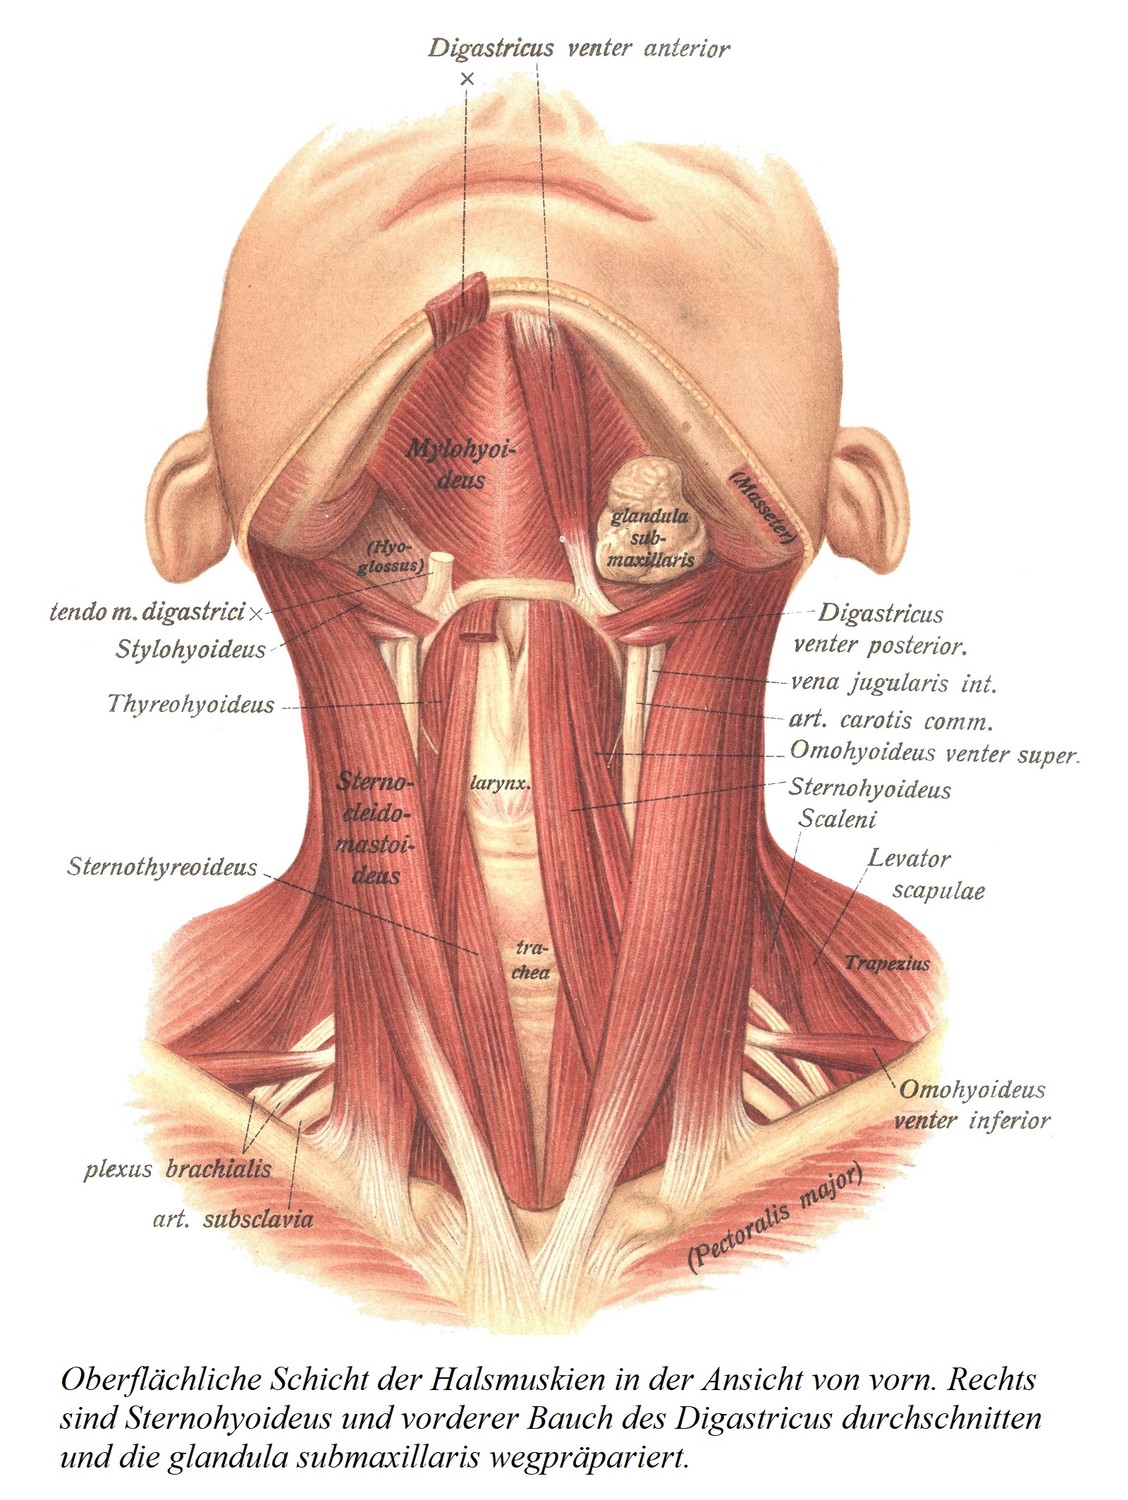 Поверхностный слой мышц шеи спереди. Справа разделены грудино-подъязычная мышца и переднее брюшко двубрюшного нерва и удалена подчелюстная железа.